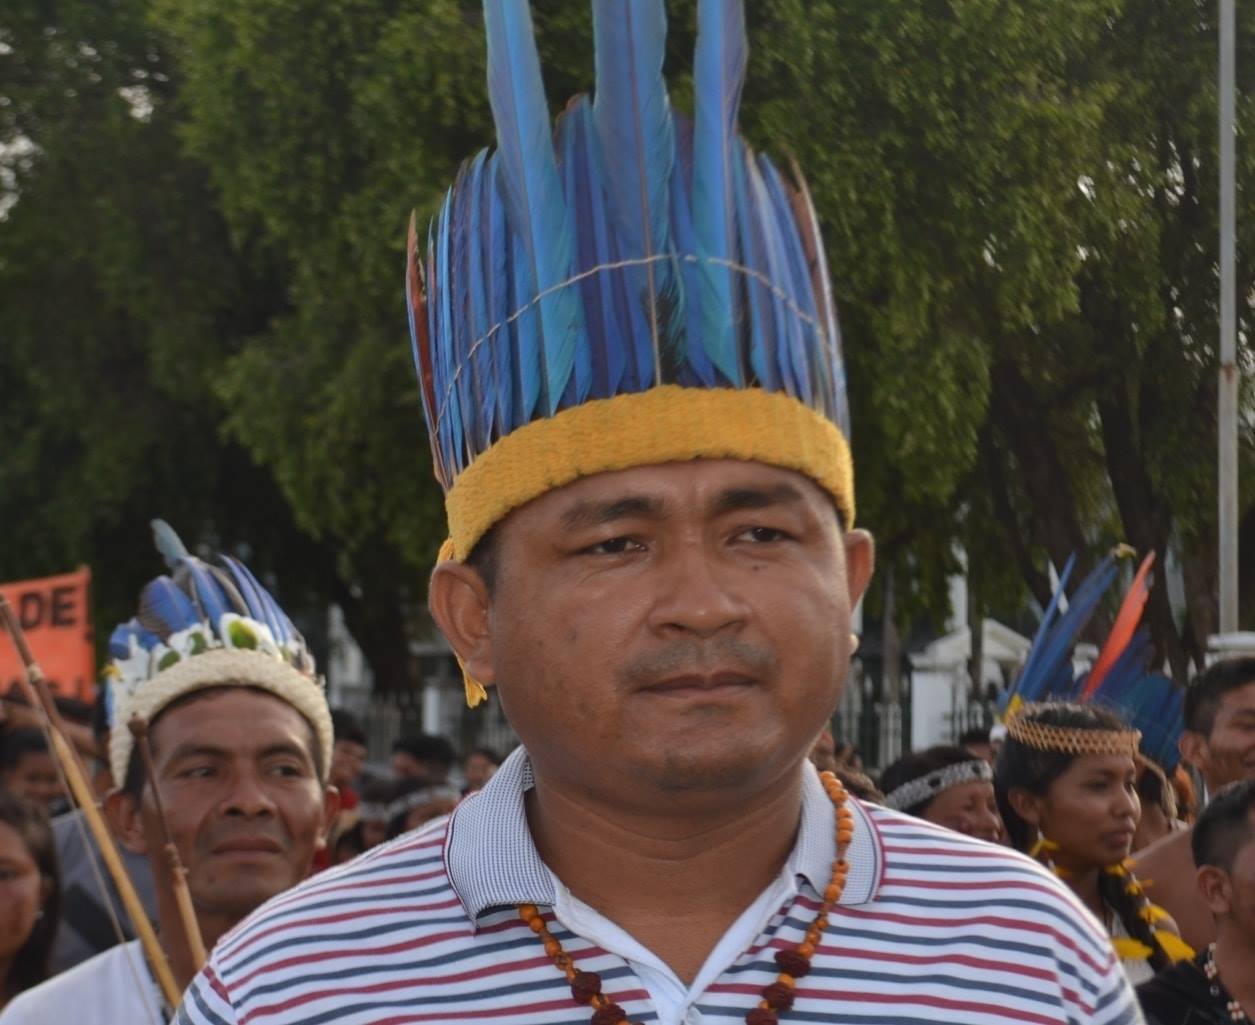 Liderança indígena assume coordenação do DSEI Leste